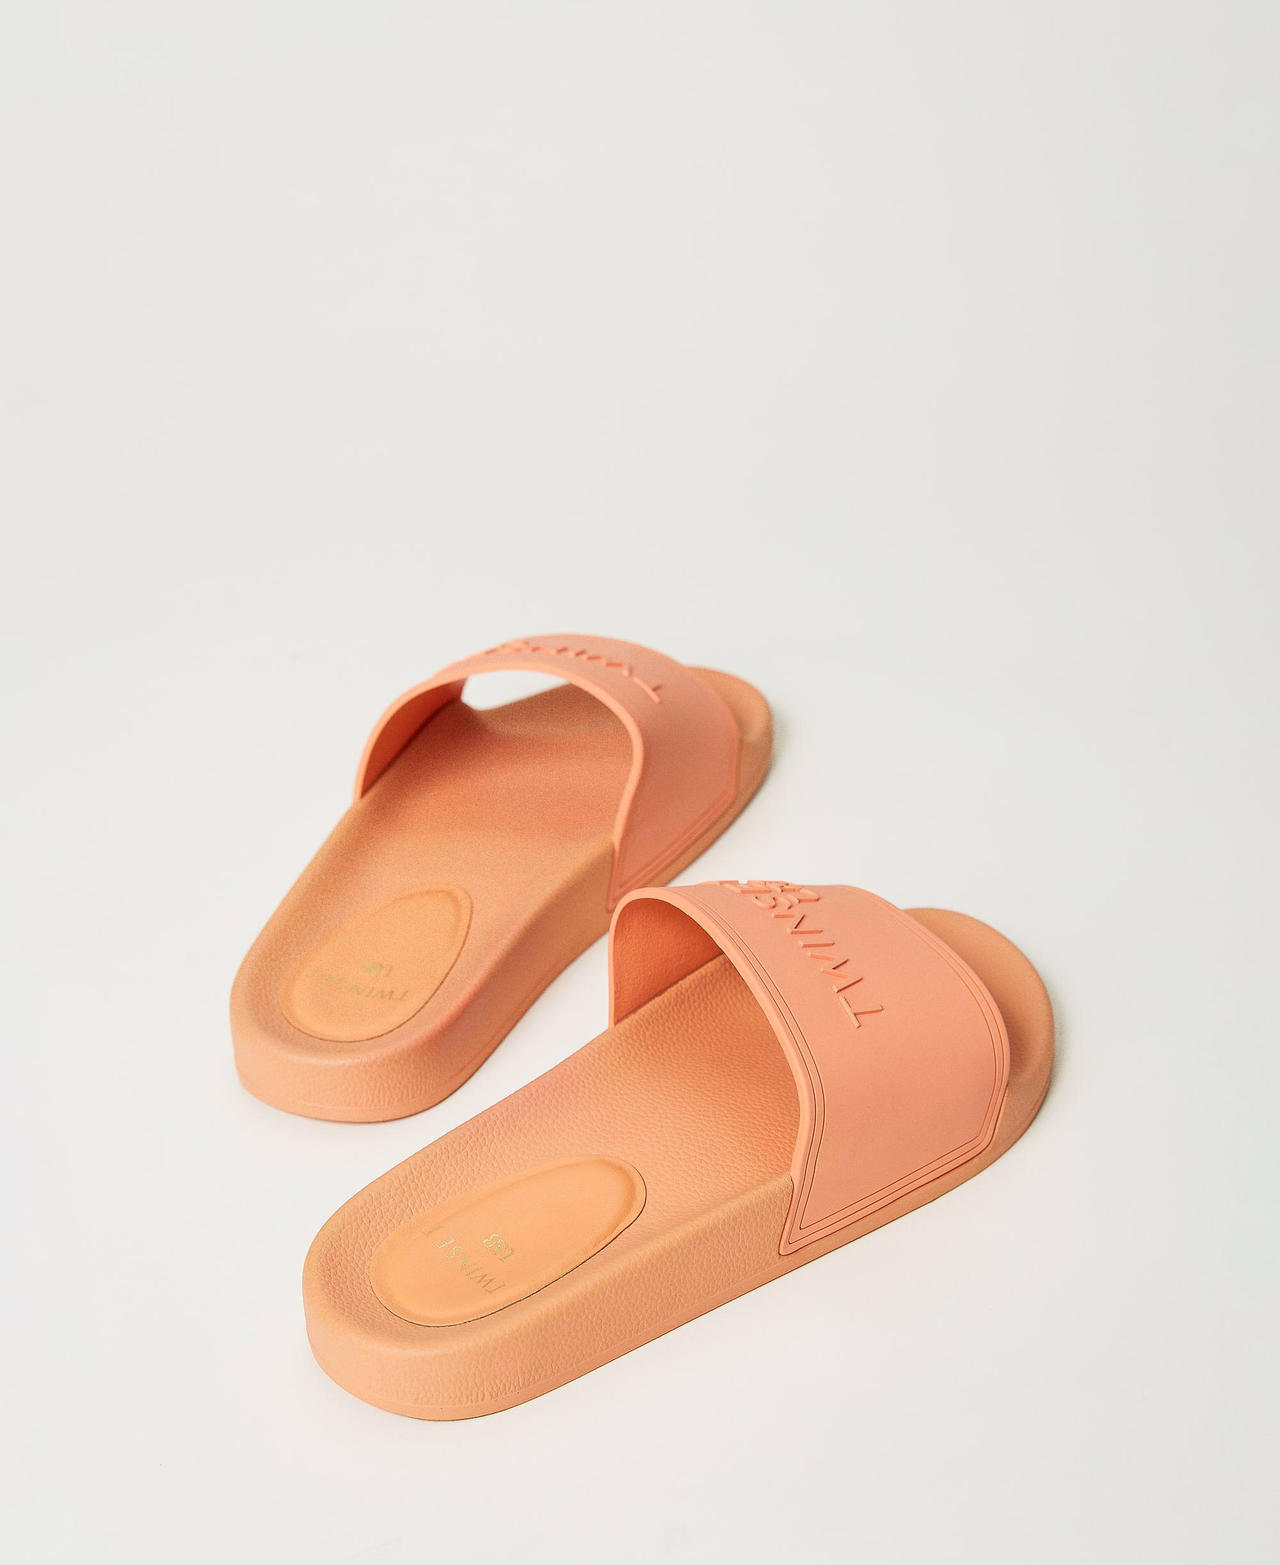 Sandalias de pala con logotipo en relieve Naranja «Cantaloupe» Mujer 231LMPZDD-03